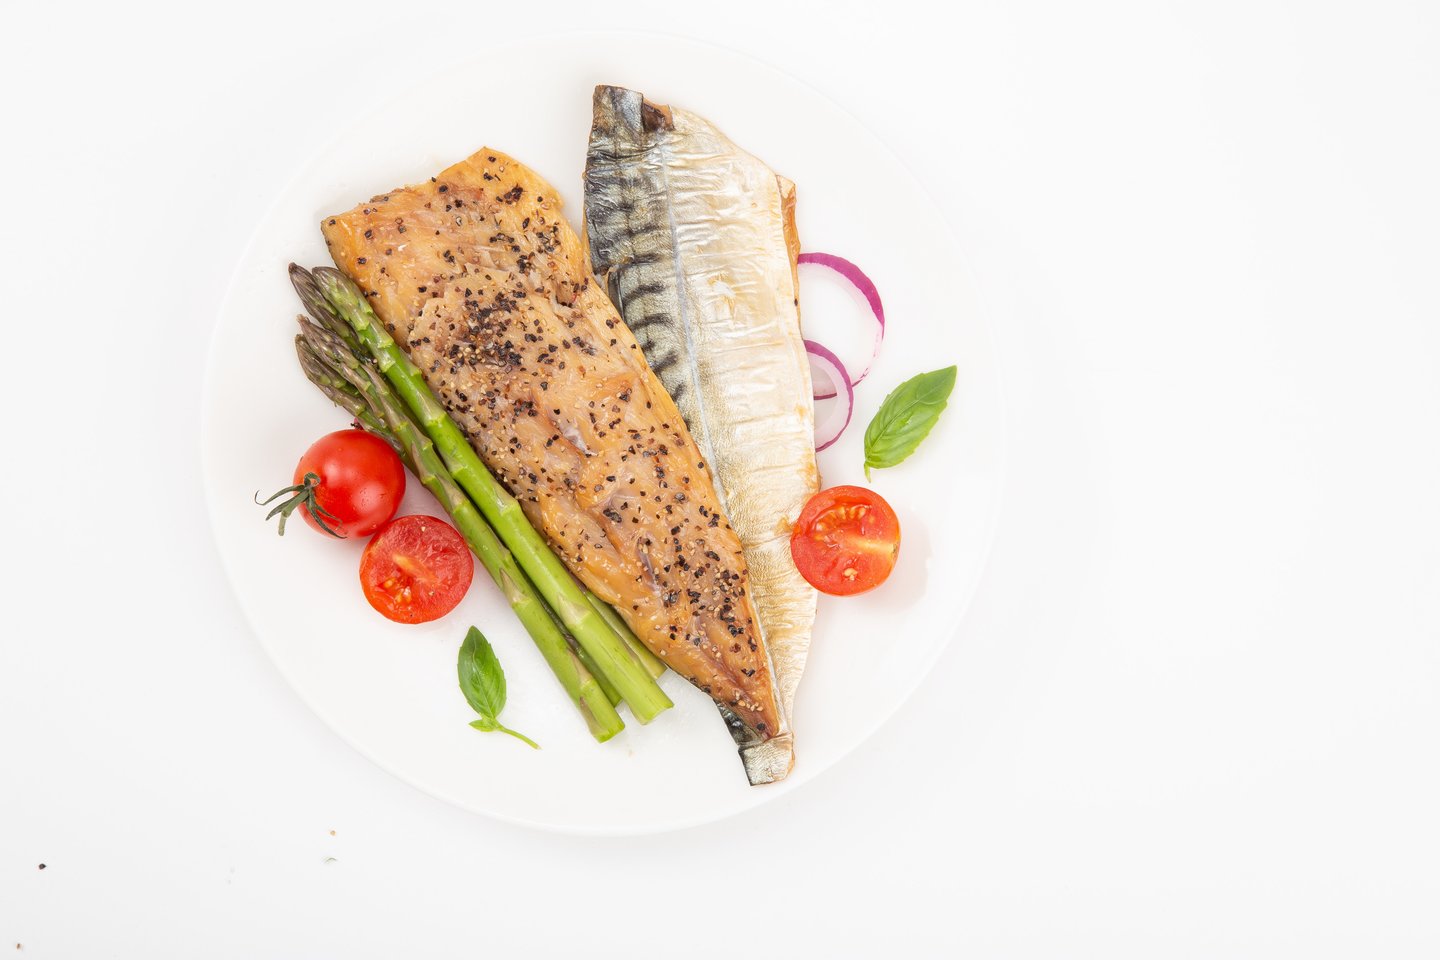  Omega-3 riebalų rūgštys, randamos žuvyse – kuo jos tokios ypatingos?